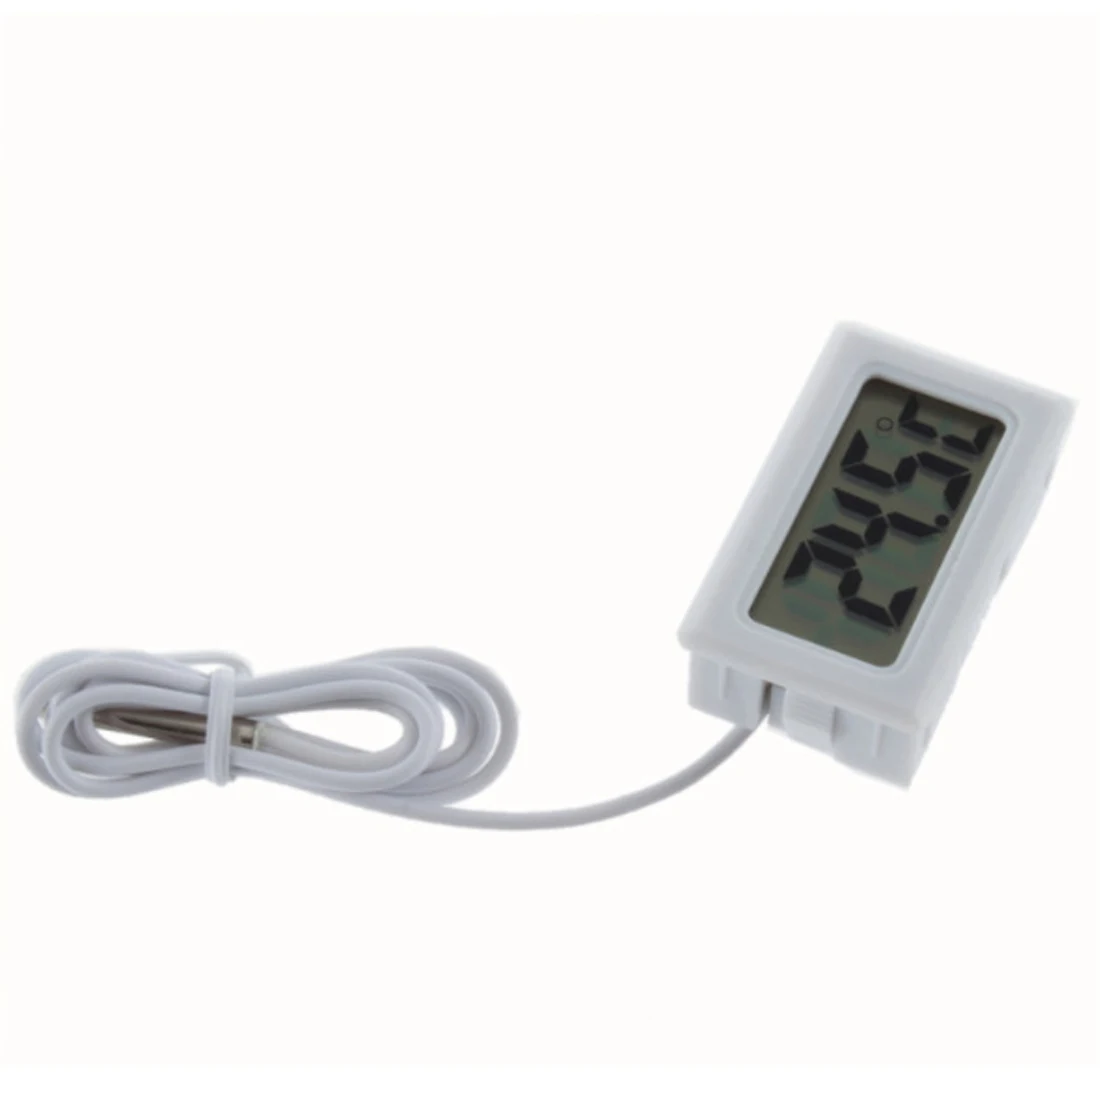 Высококачественный 1 шт. Мини ЖК-дисплей инкрустация цифровой термометр датчик для холодильника/аквариума тестер температуры включает батареи - Цвет: Белый